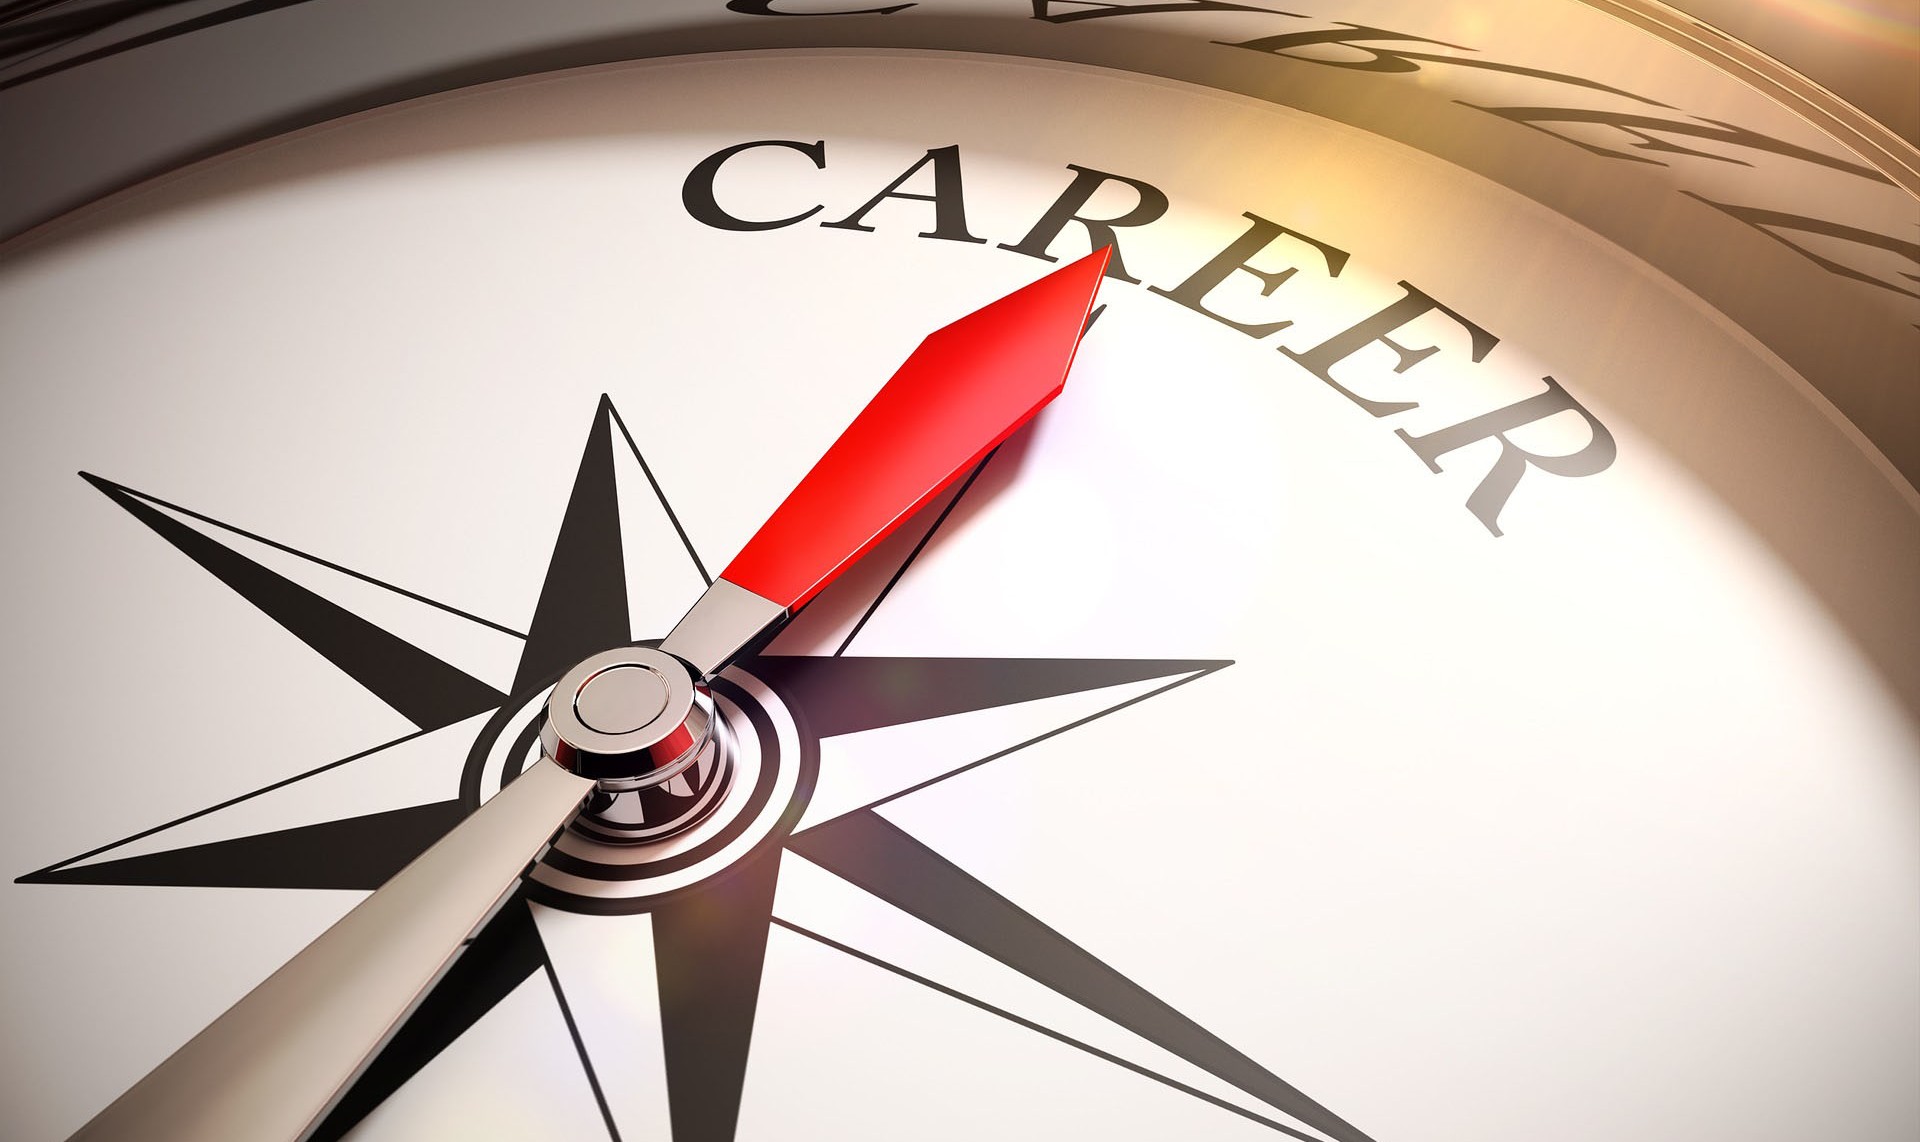 Das Bild zeigt einen Kompass dessen Nadel auf das Wort "Career" zeigt.